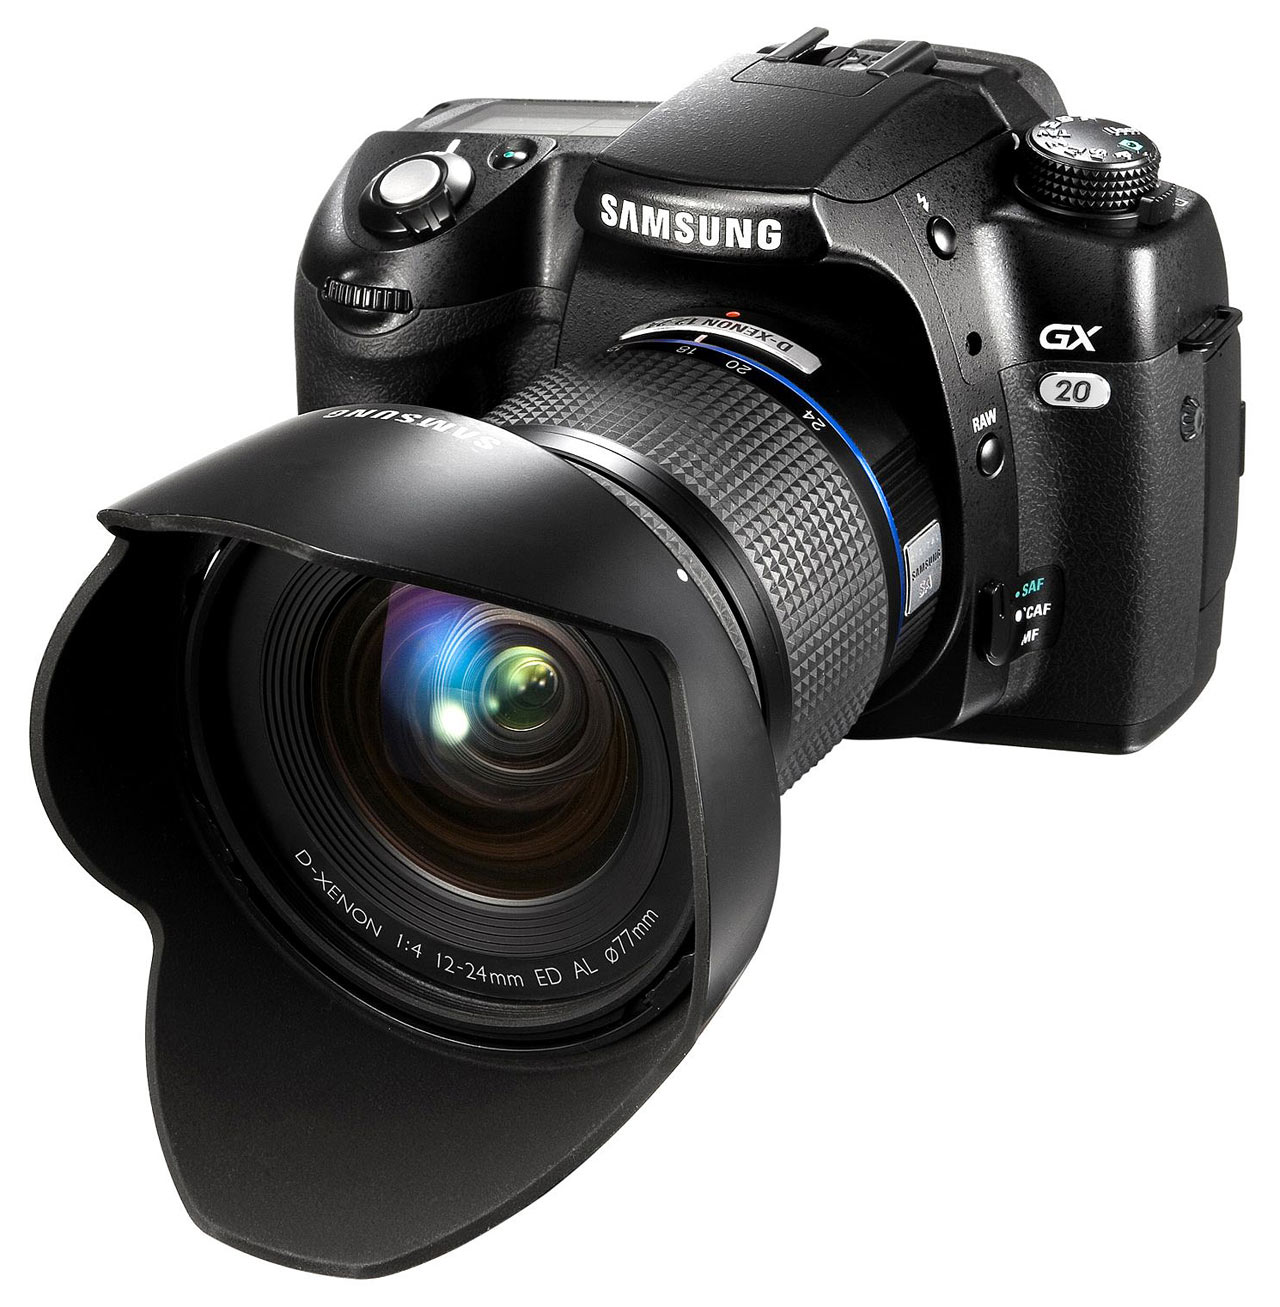 دوربين عكاسی ديجيتال سامسونگ-Samsung GX-20